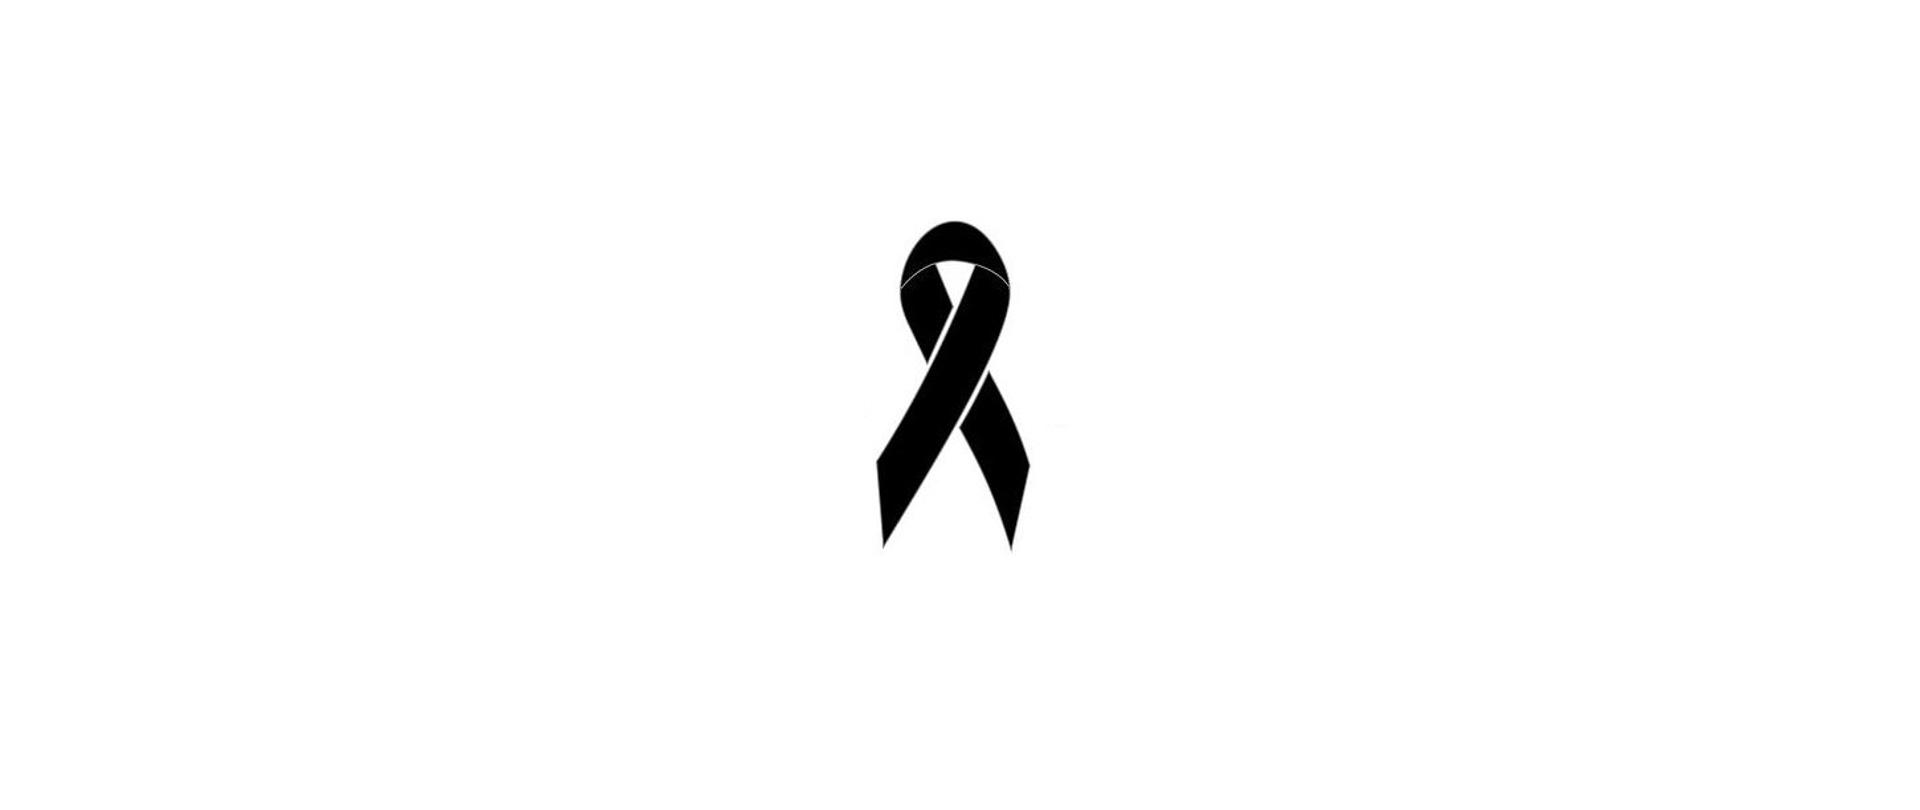 Wstążka żałobna koloru czarnego symbolizująca pamięć zmarłego.